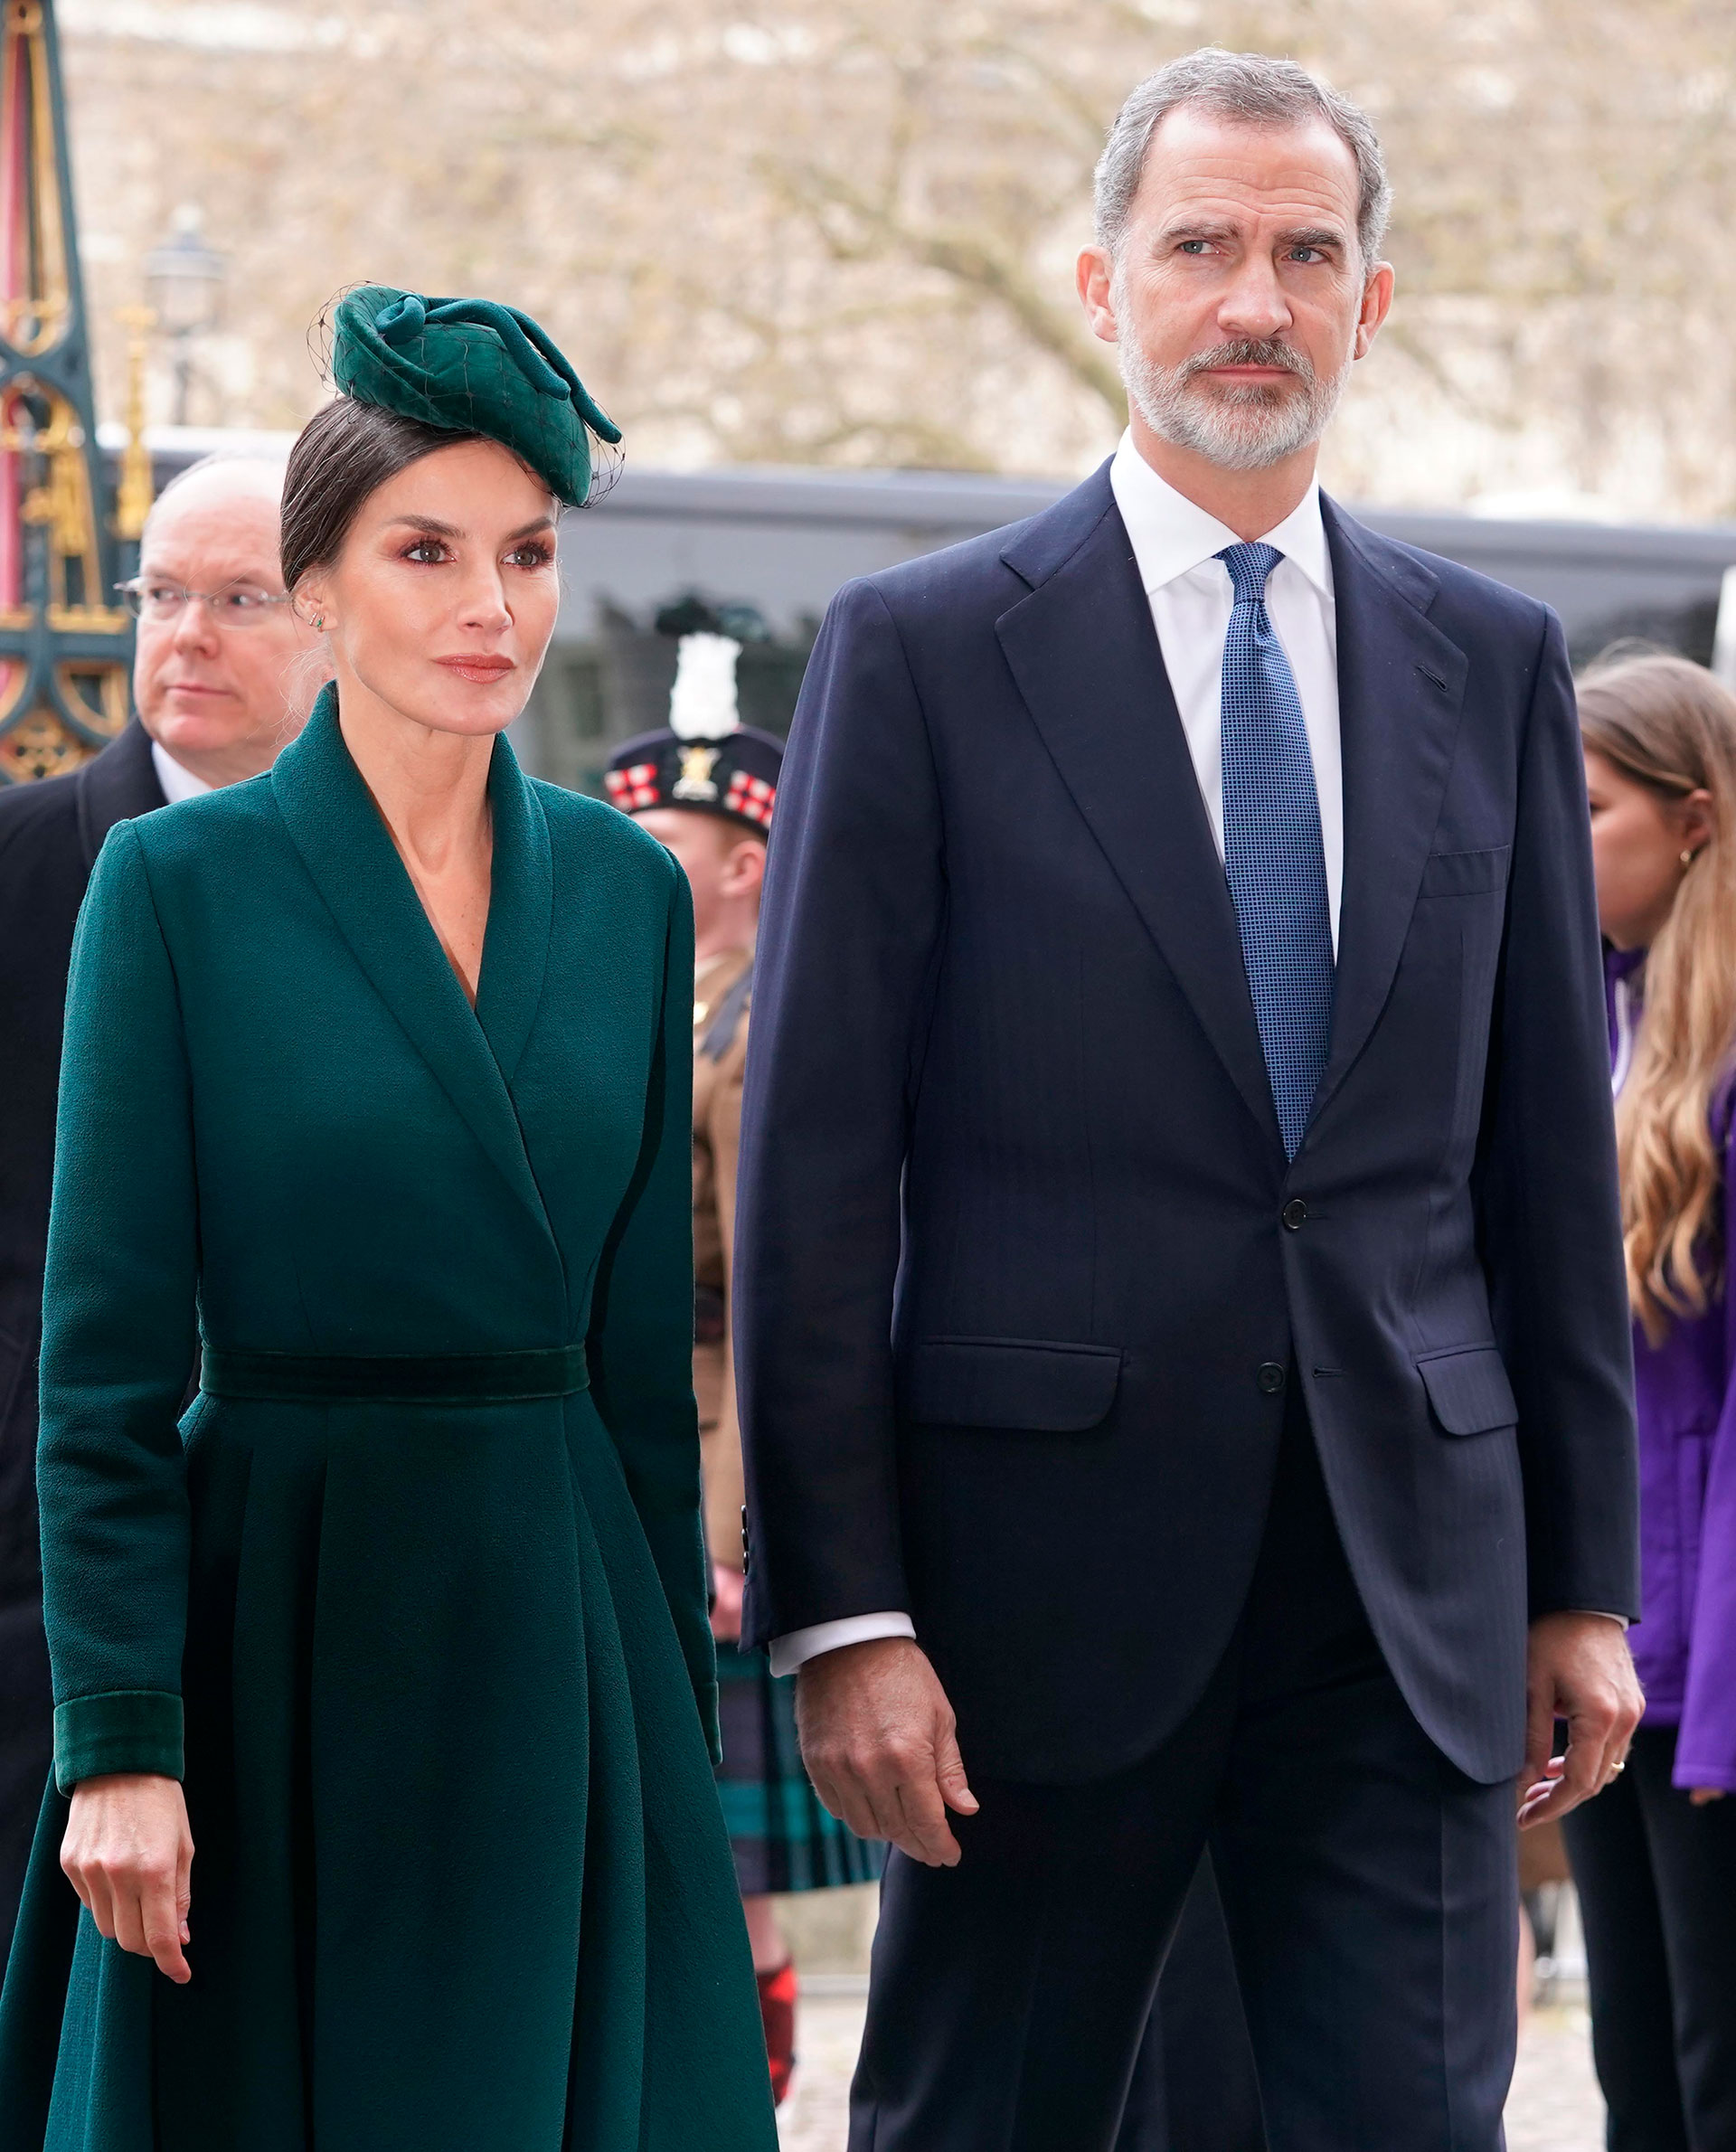 La realeza europea se cita para rendir homenaje al duque de Edimburgo: todas las imágenes